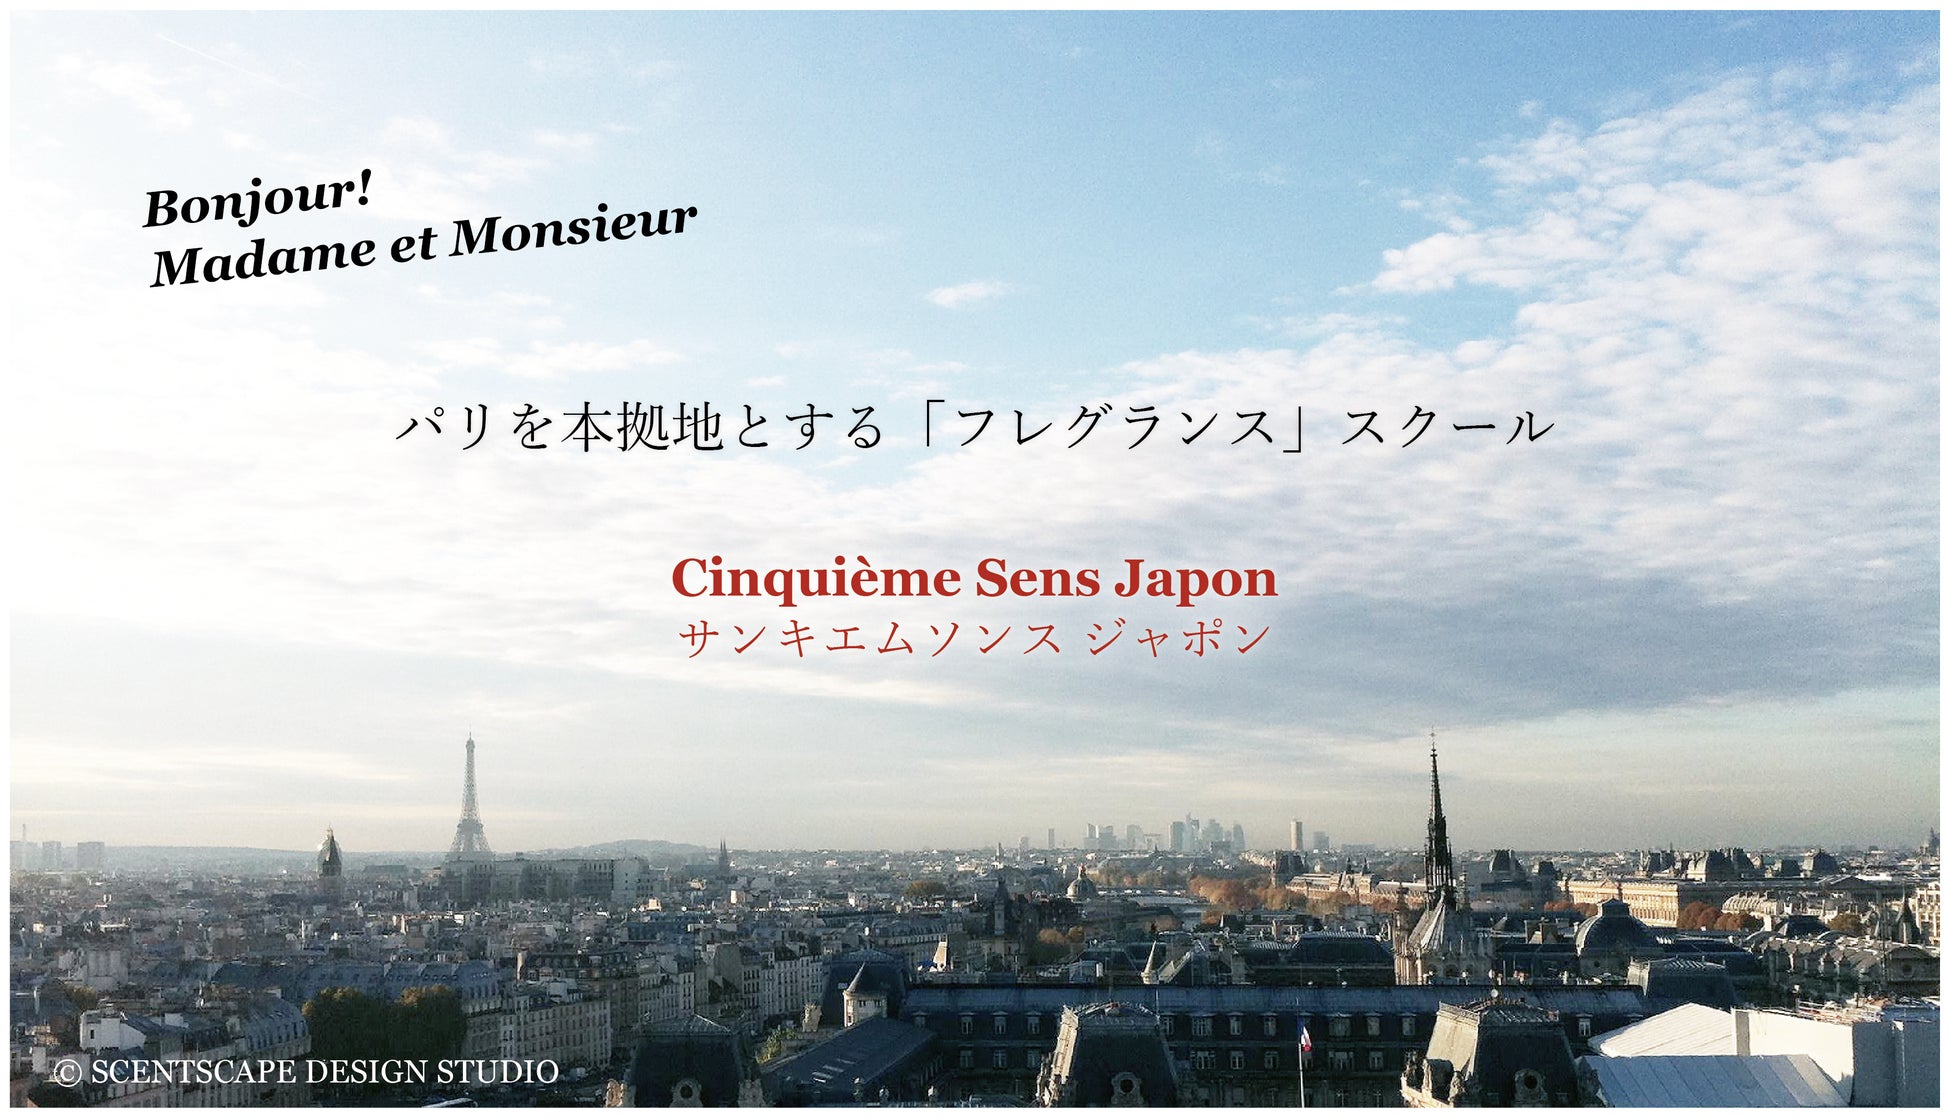 パリ発の「フレグランス」スクール、サンキエムソンスが日本で法人研修を本格始動